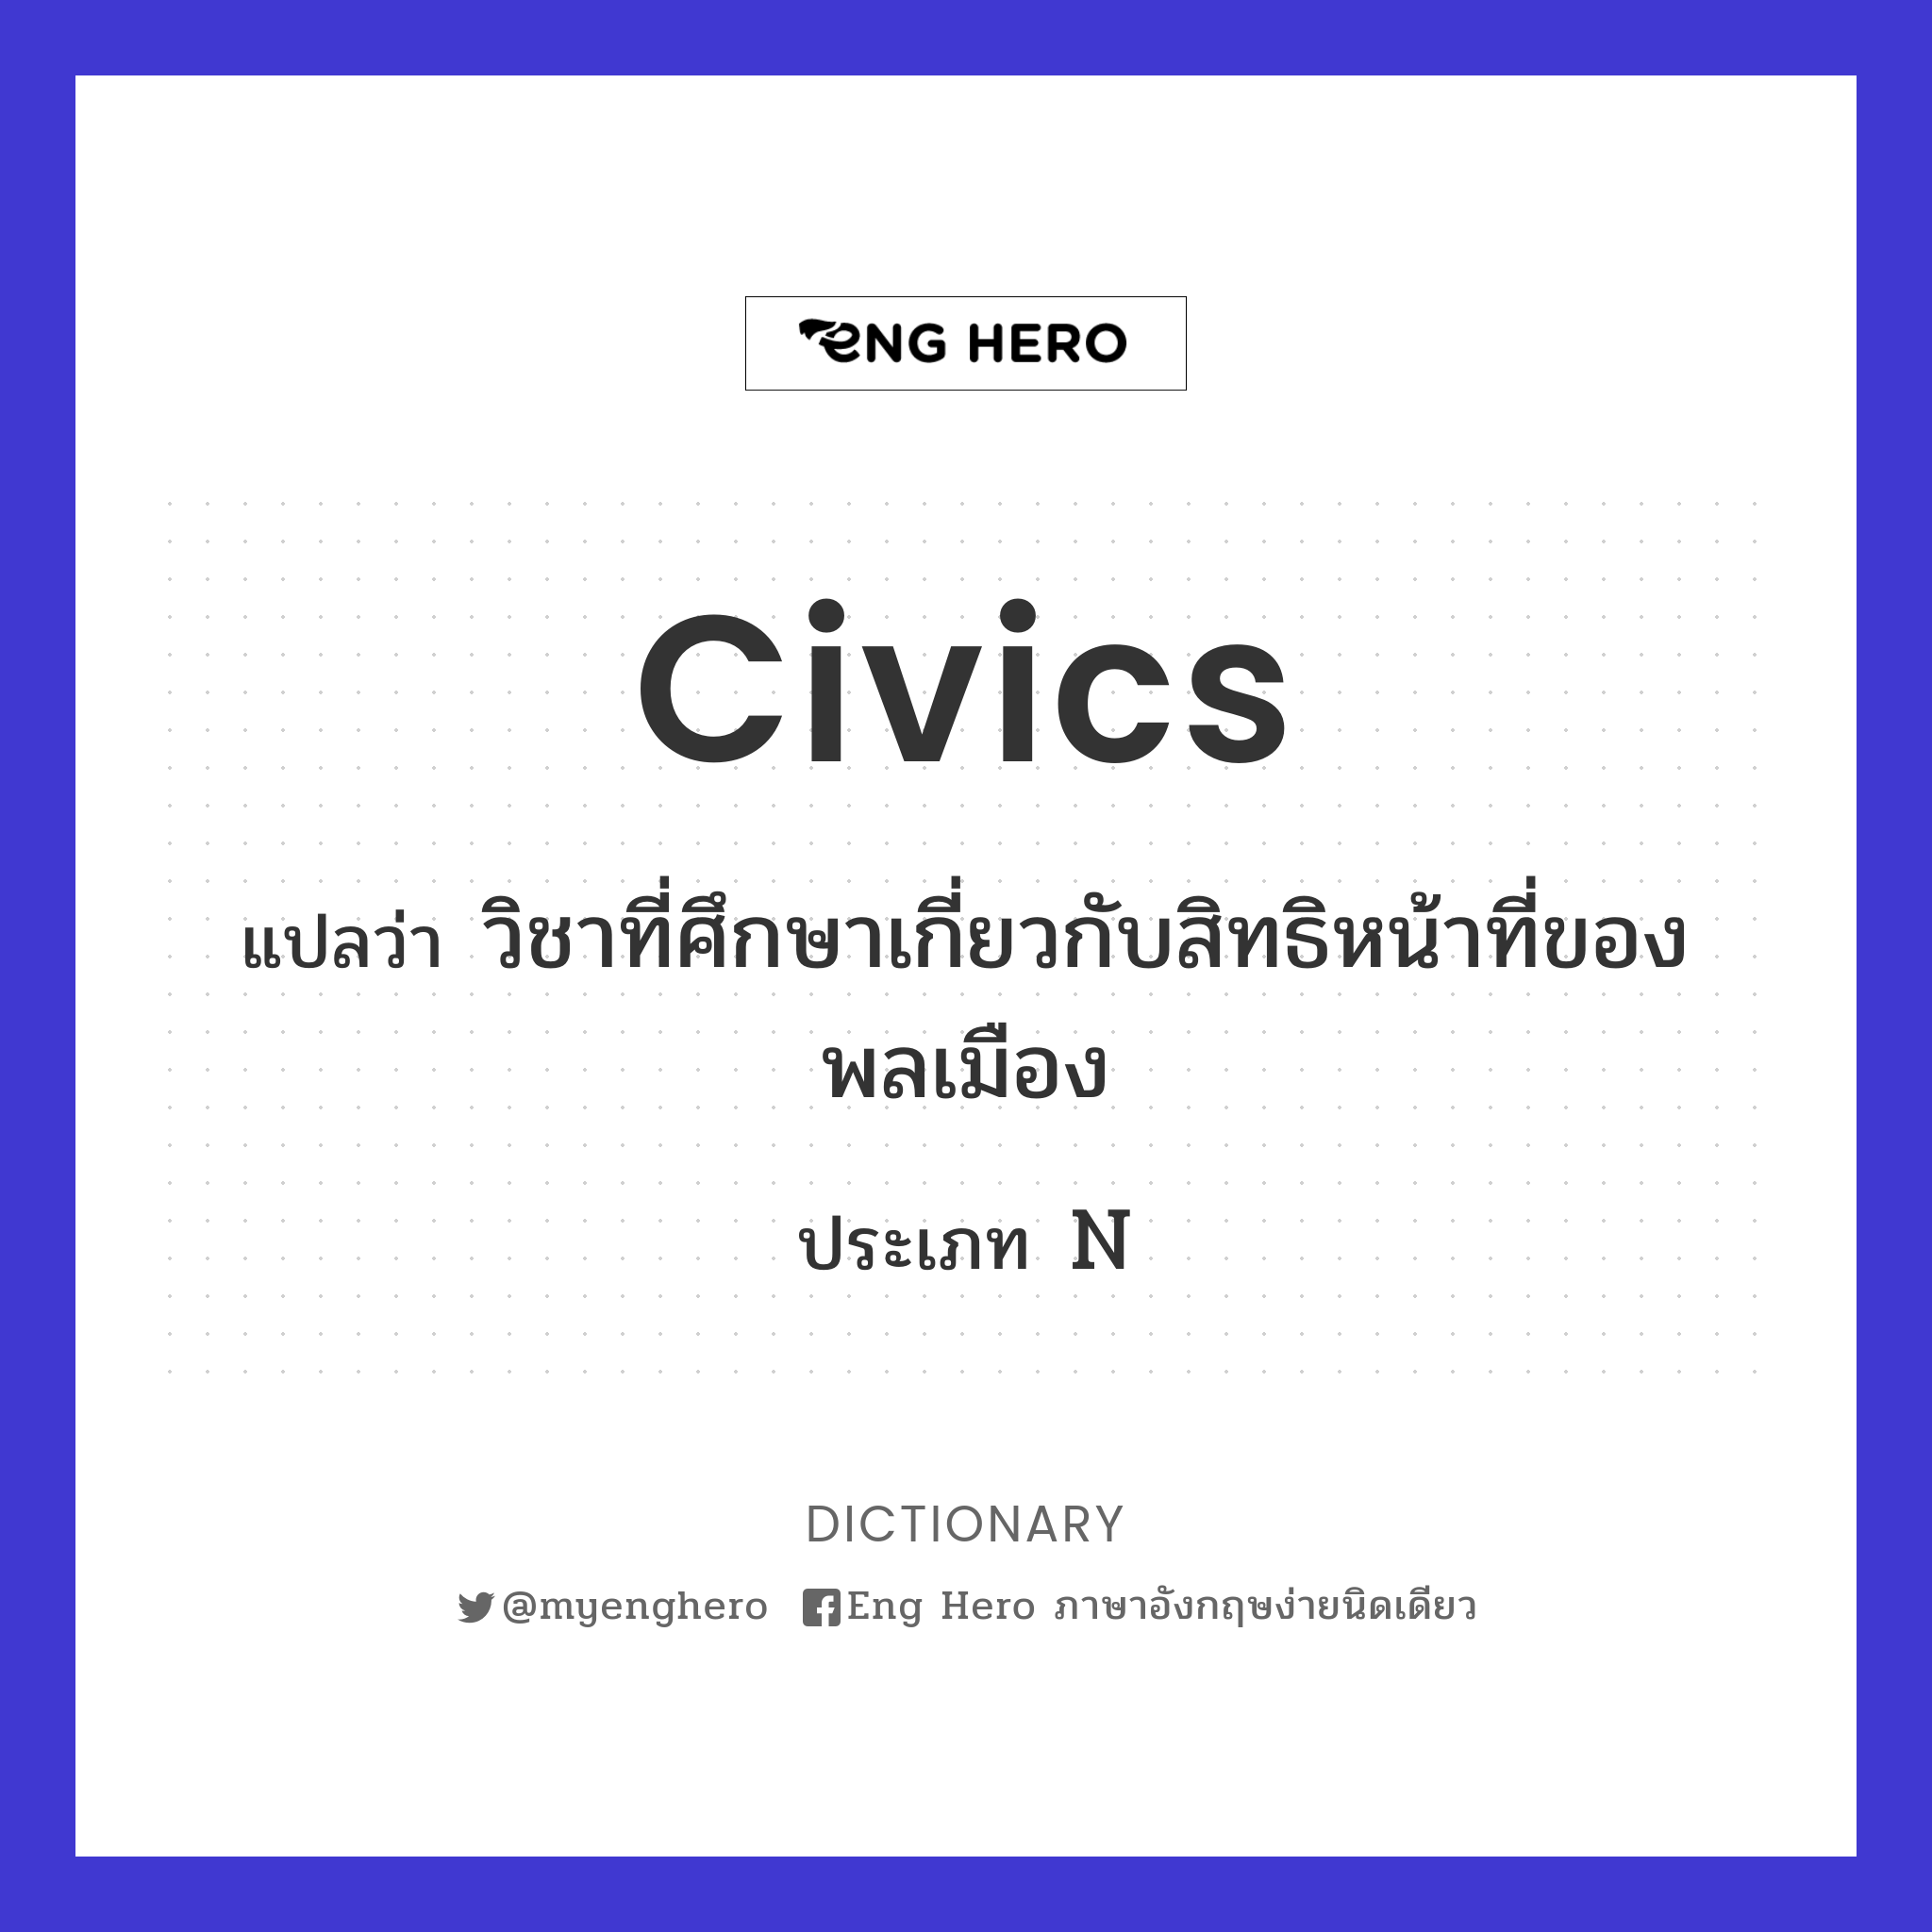 civics